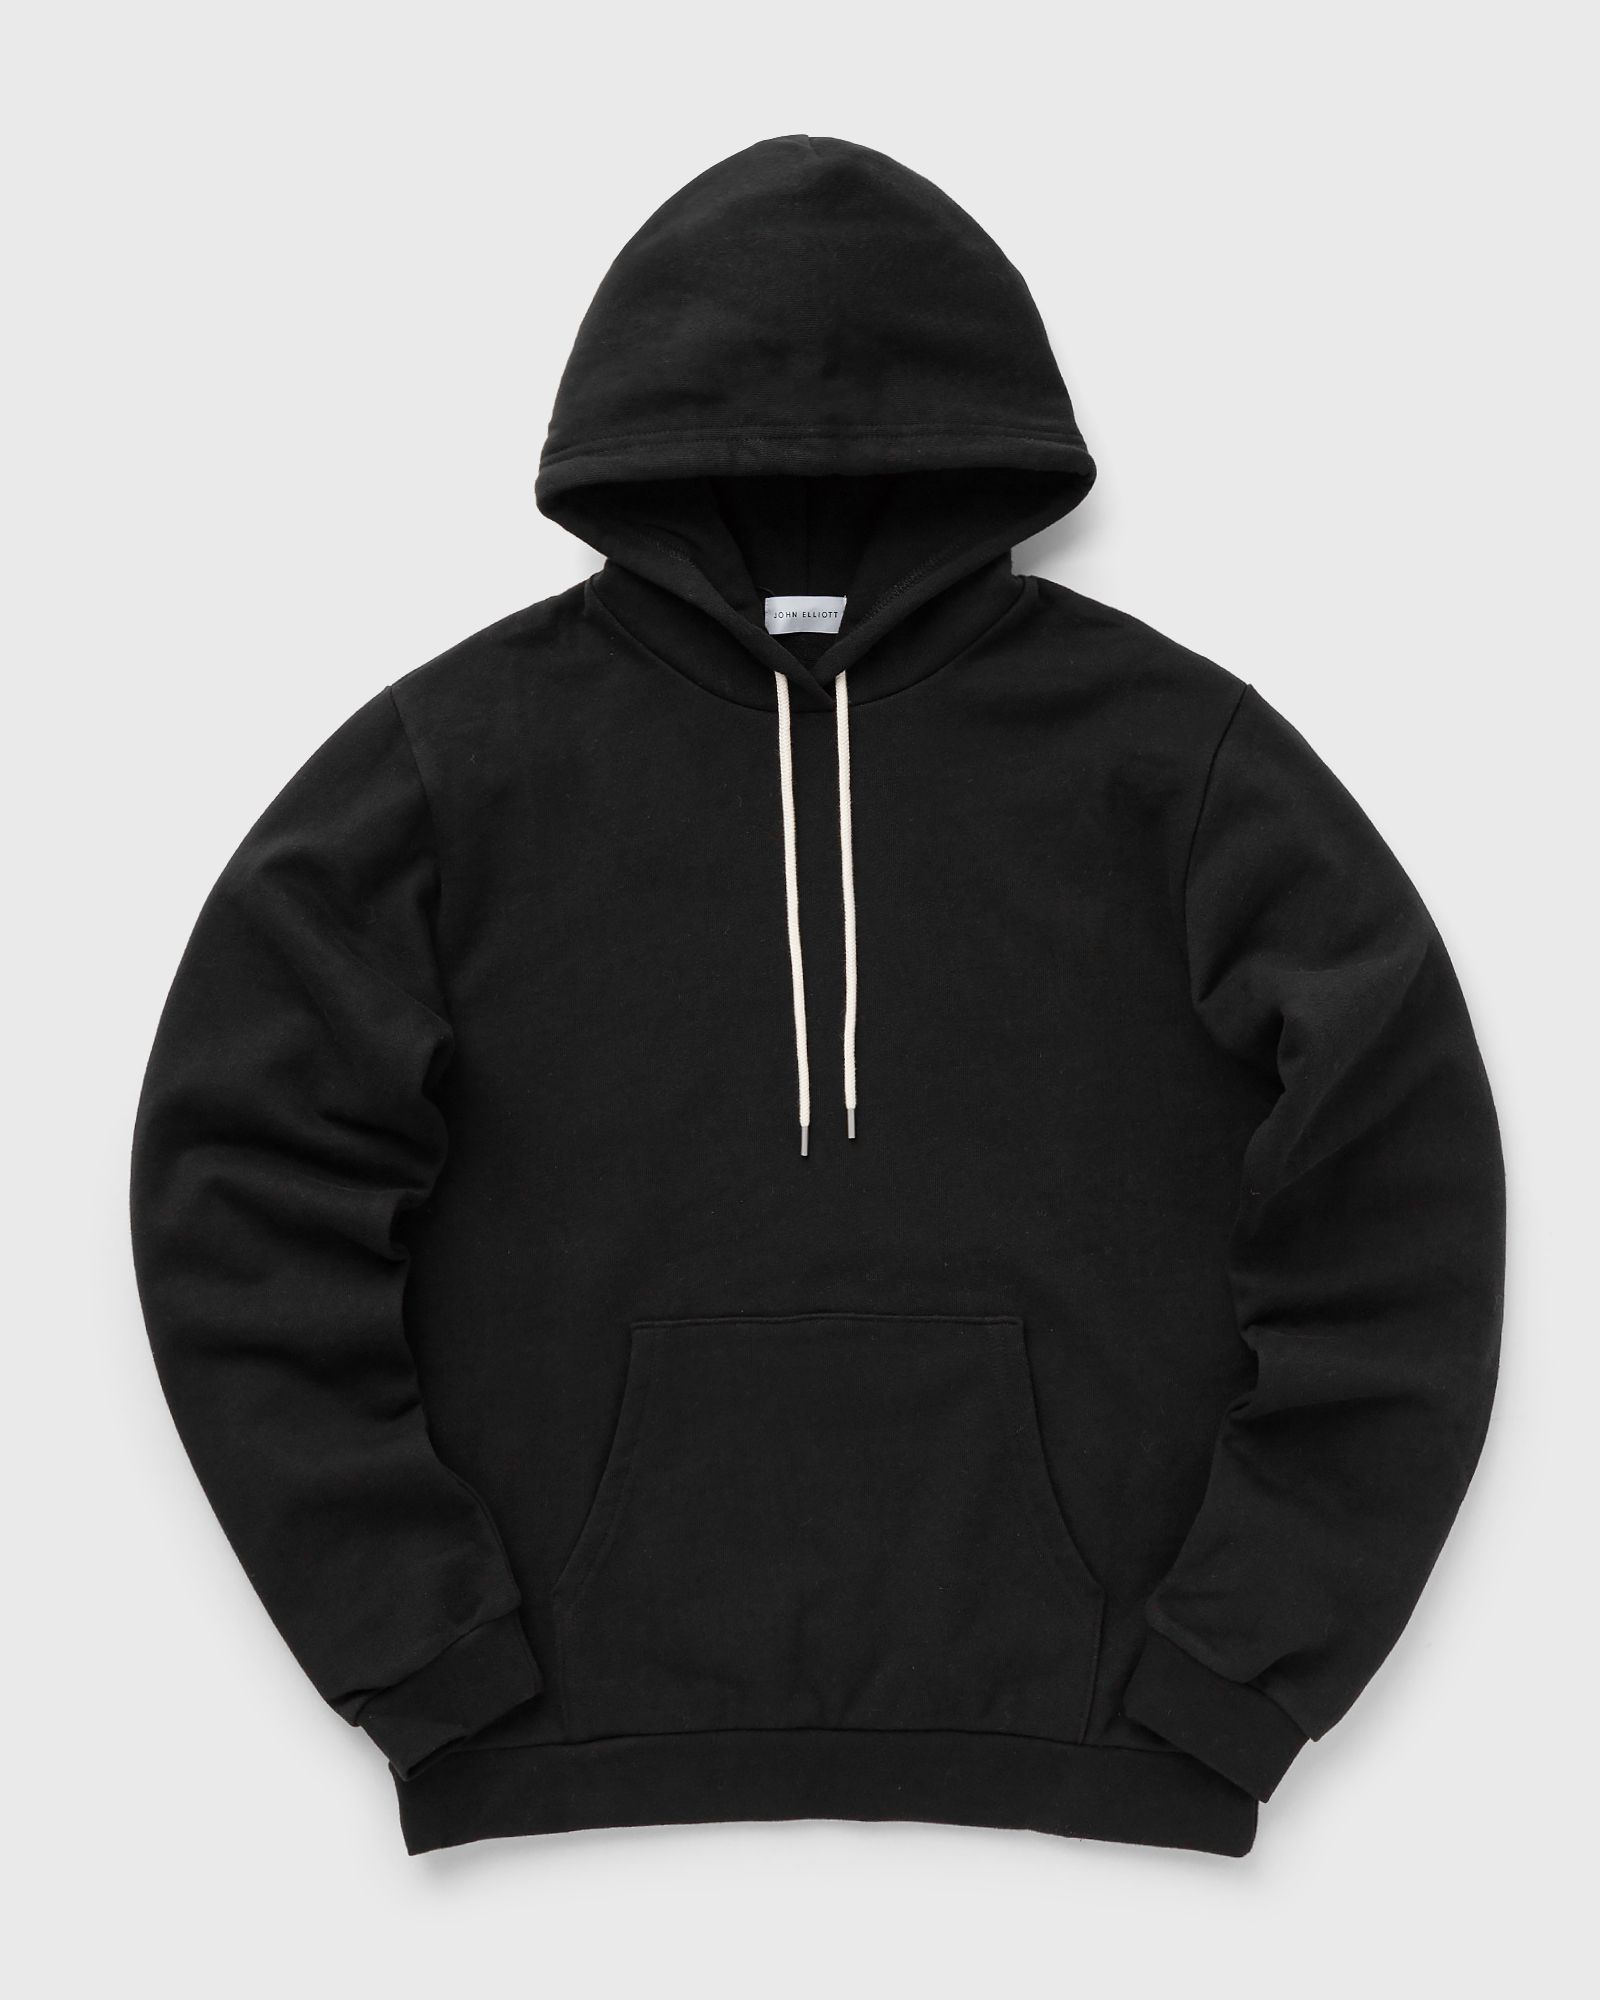 John Elliott - beach hoodie men hoodies black in größe:xxl